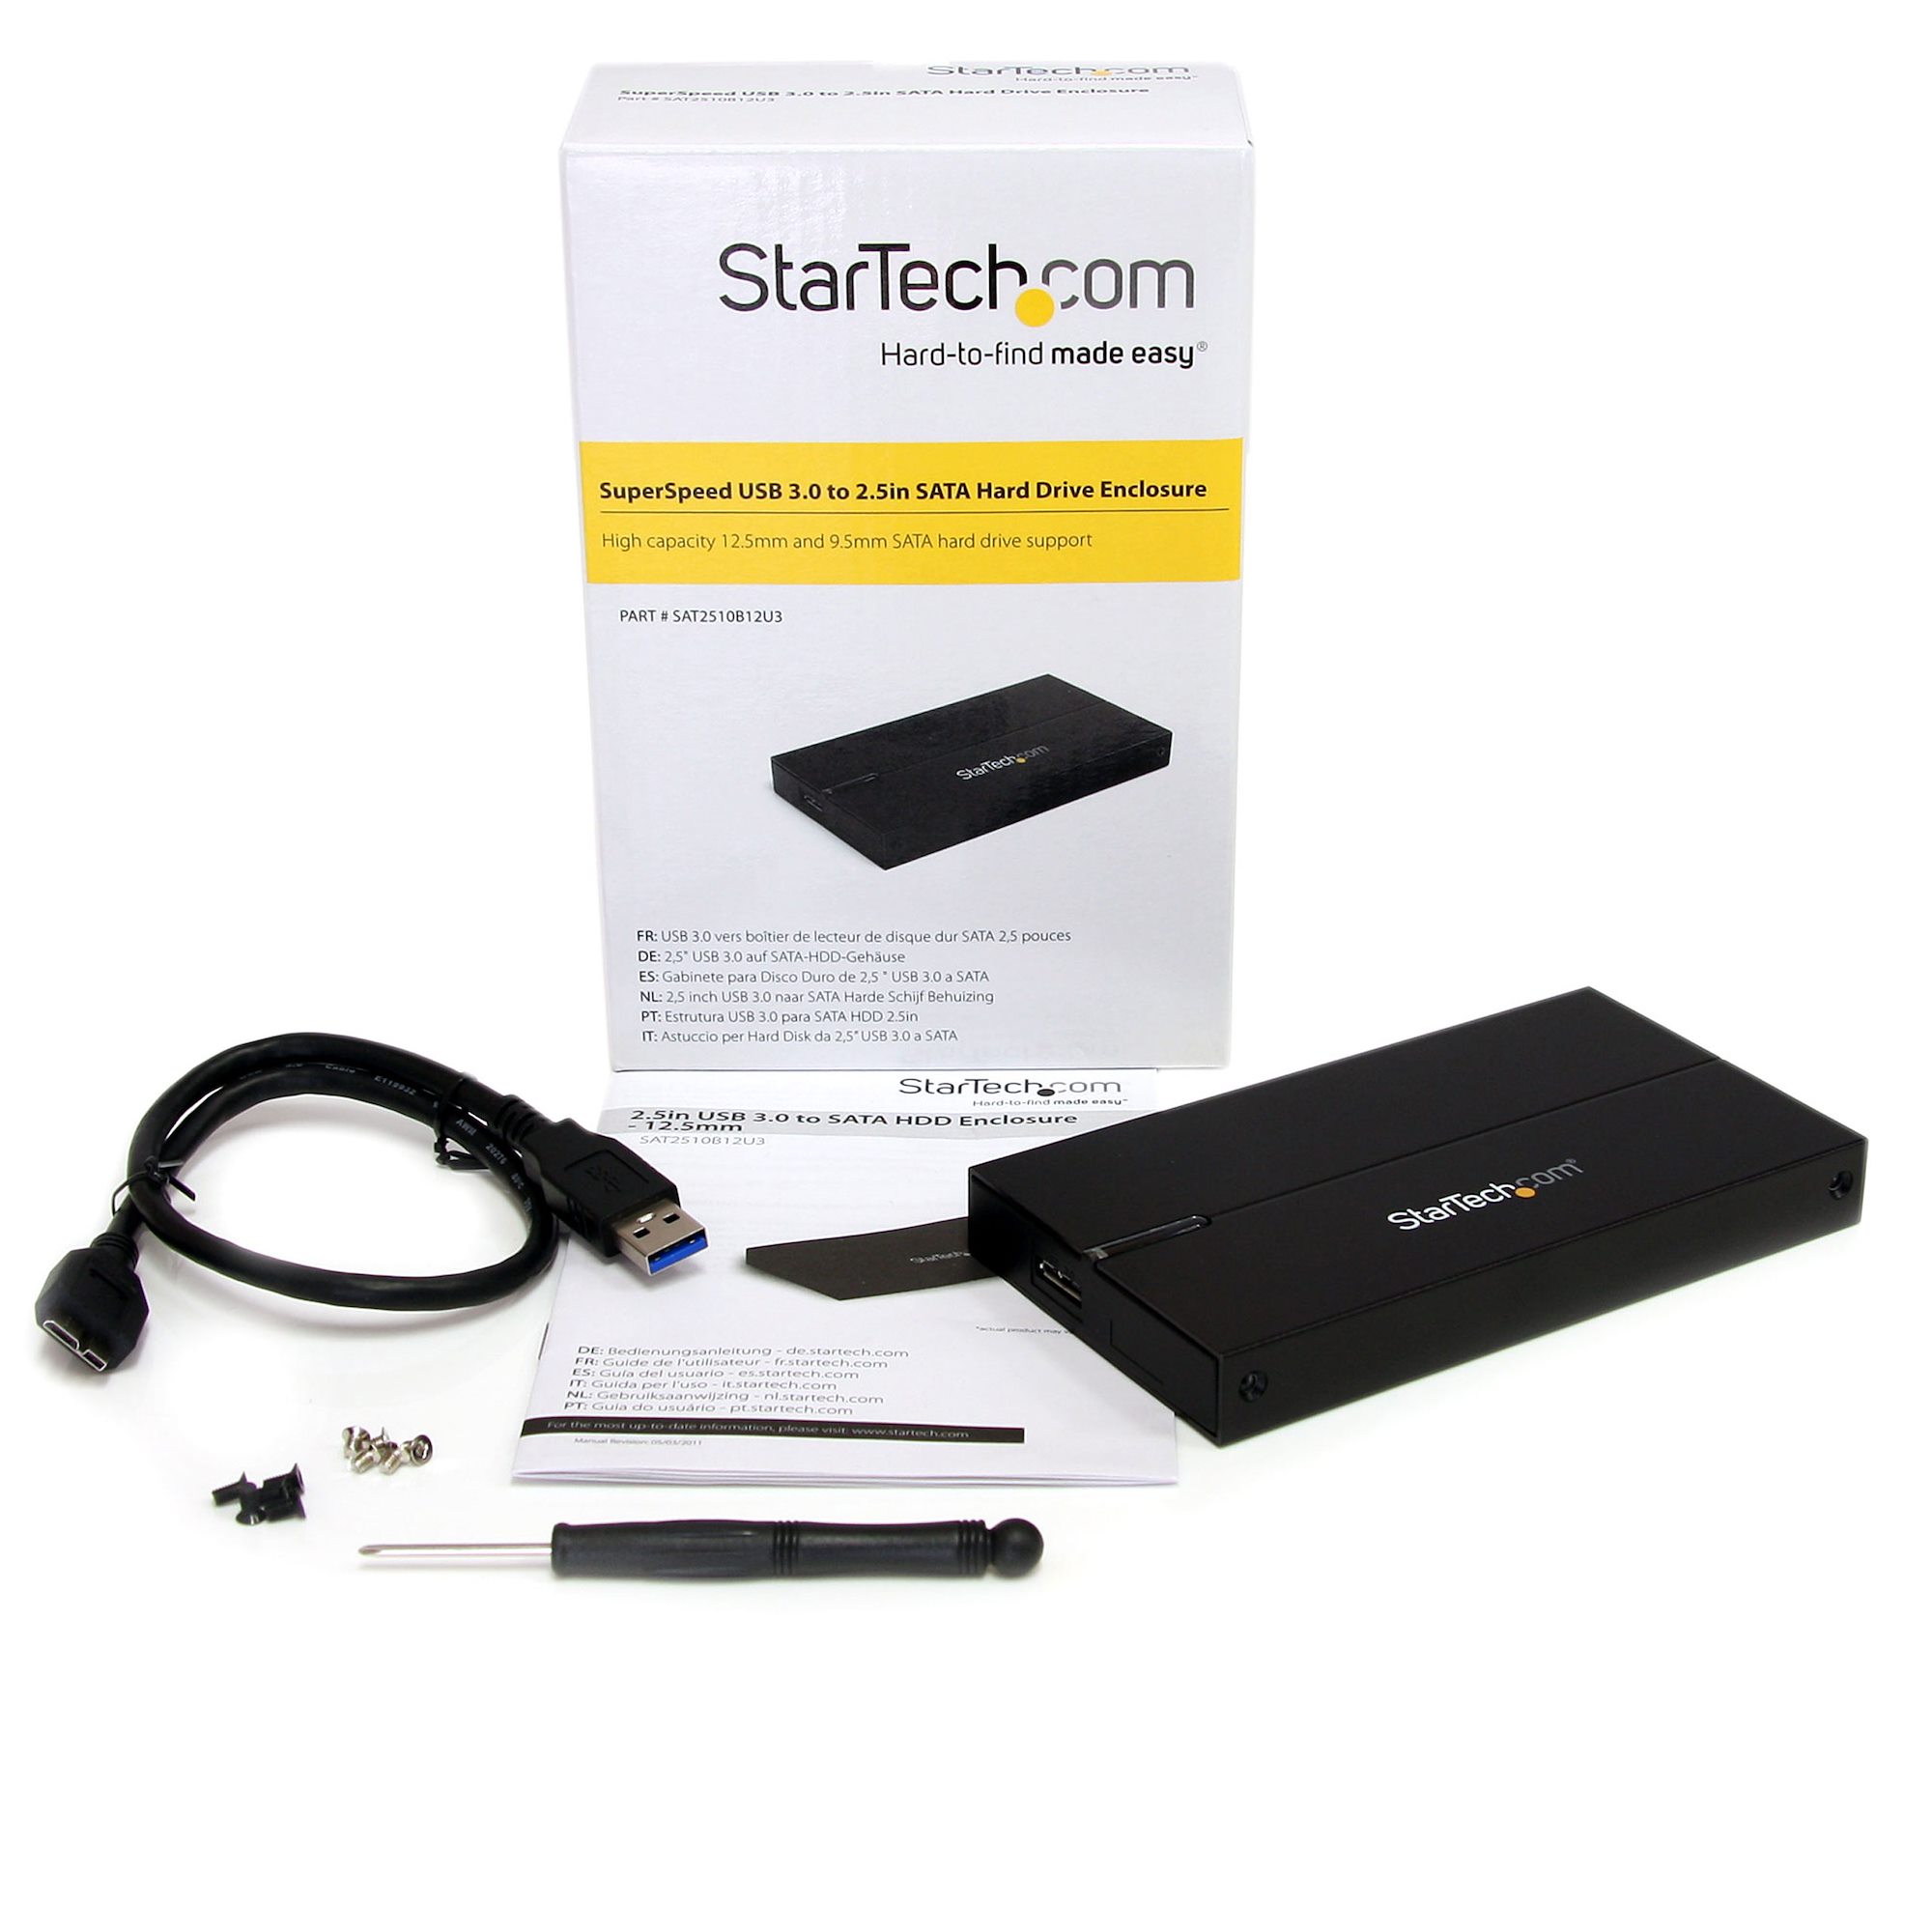 StarTech.com Boîtier USB 3.0 pour disque dur SATA de 2,5 pouces - B